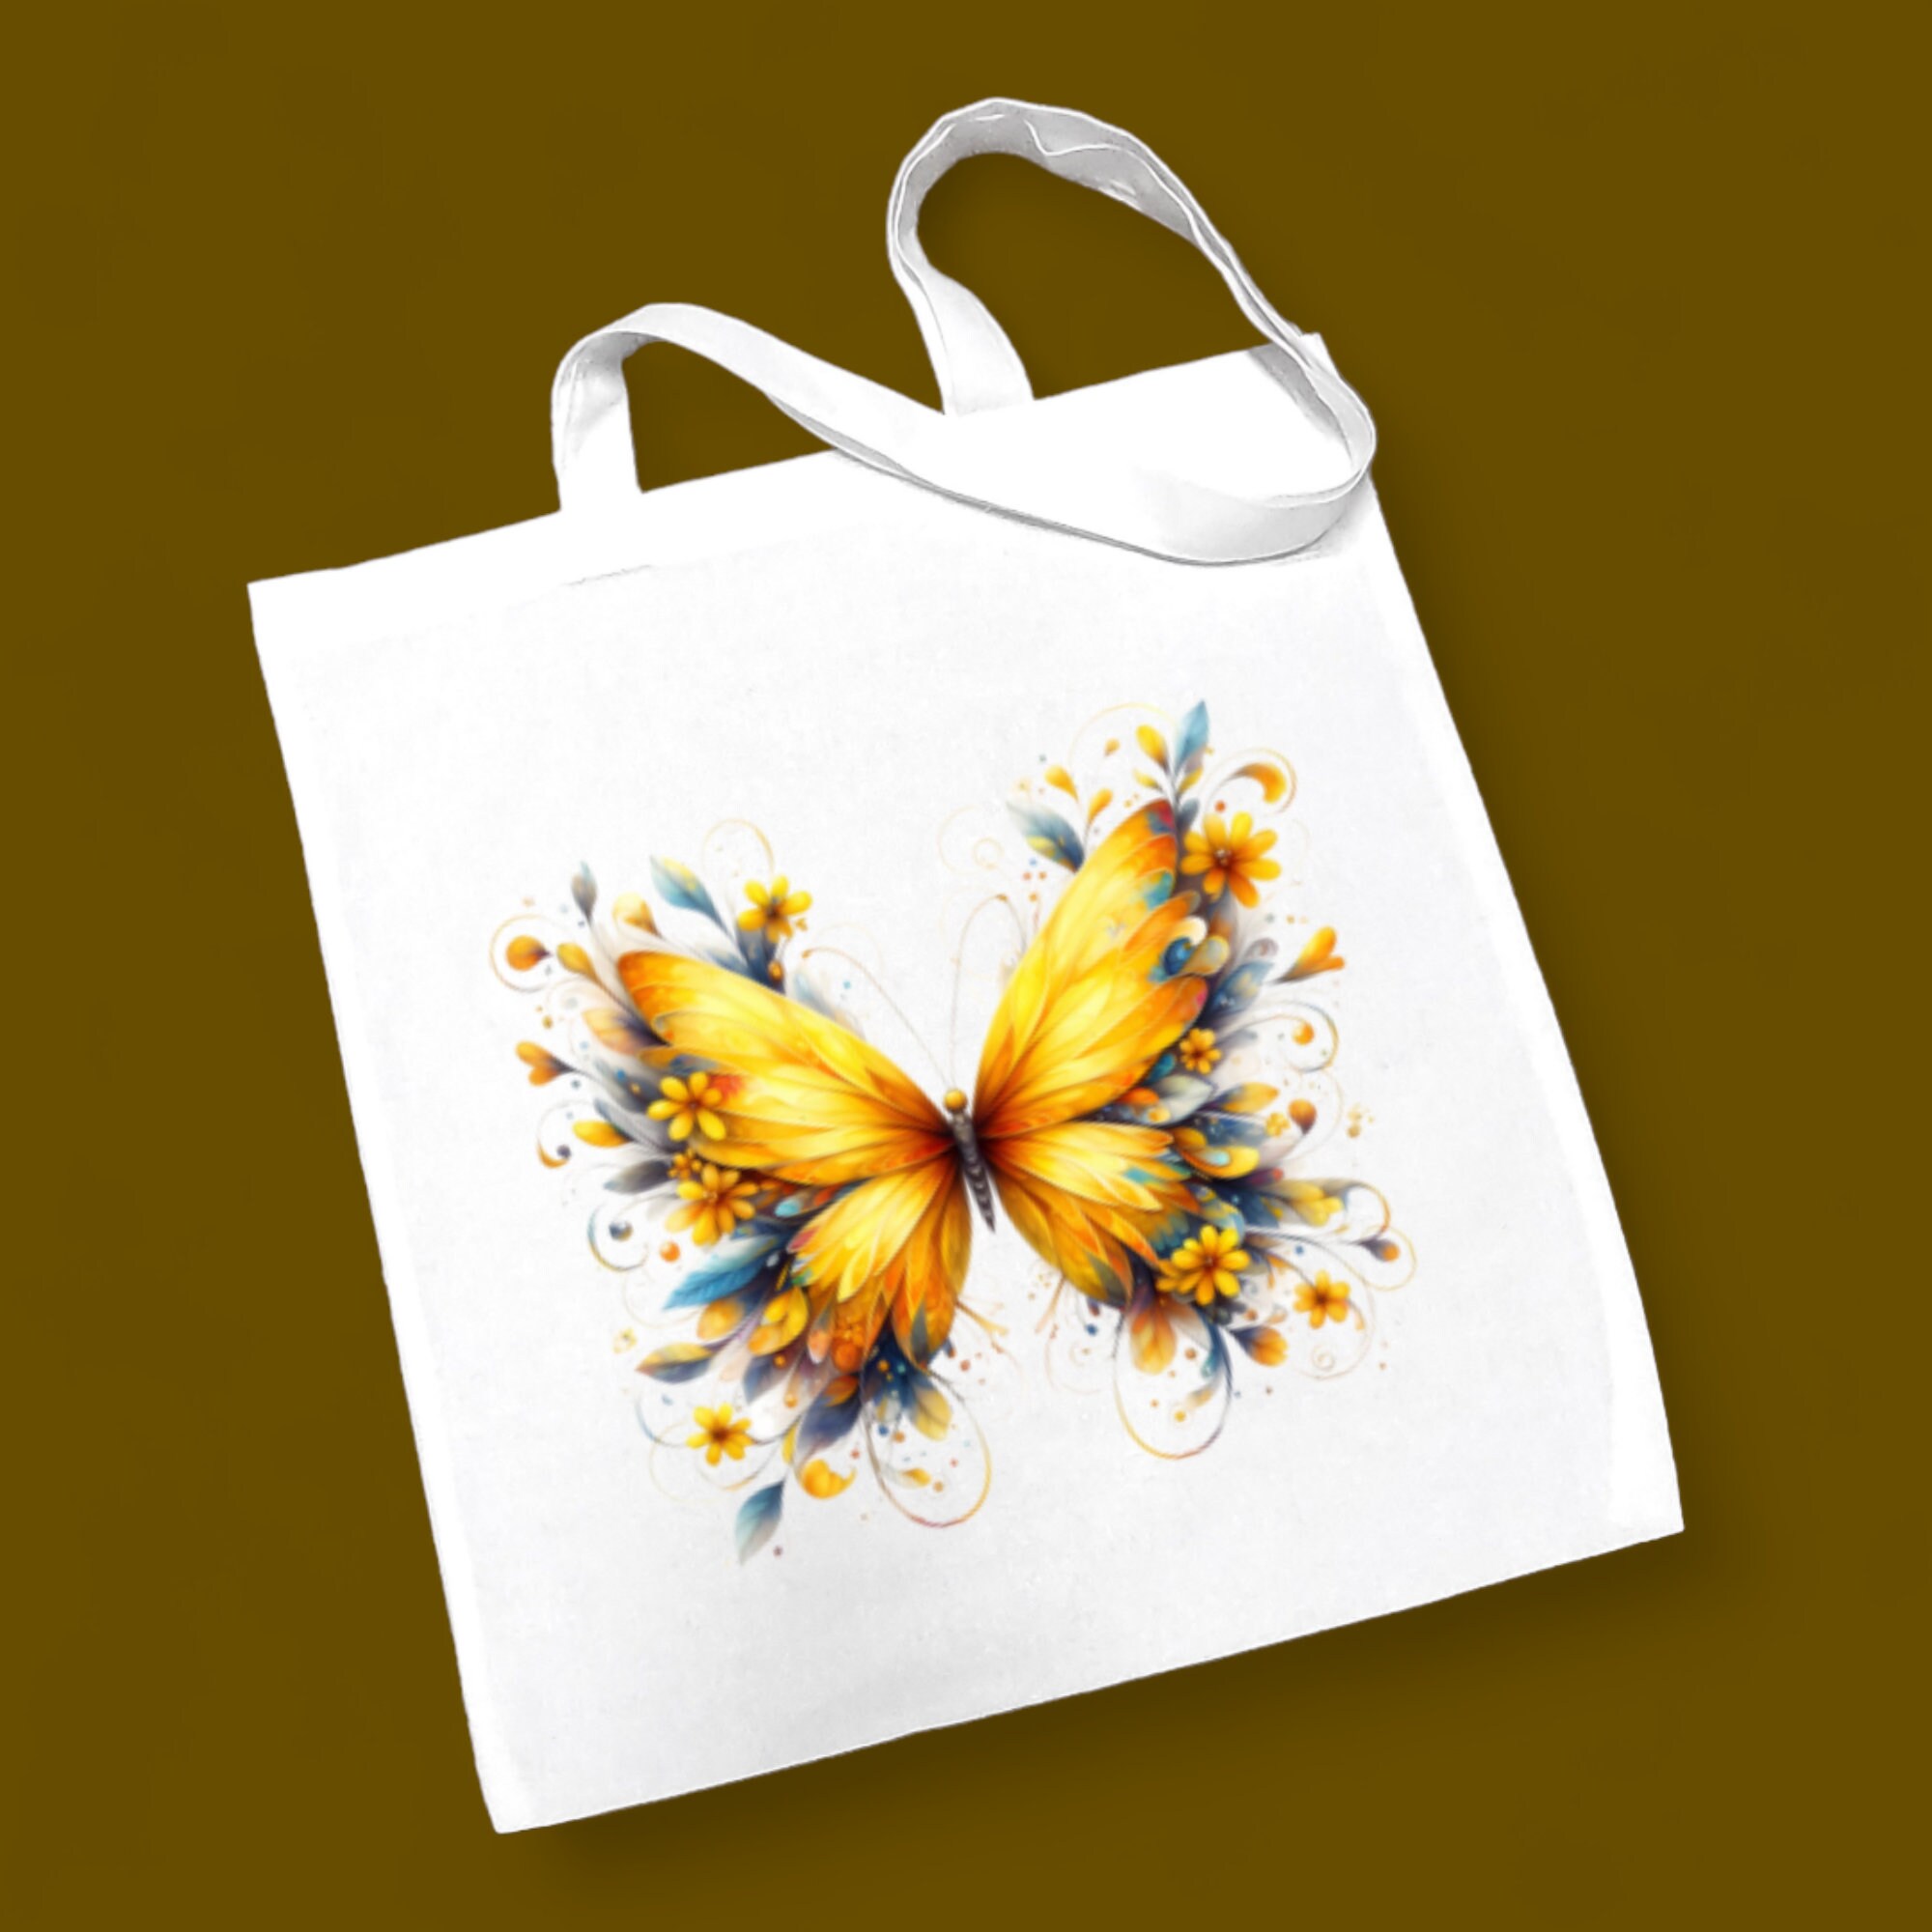 Stofftasche, Stoffbeutel, Einkaufstasche, Tasche, Geschenk zum Muttertag, Geburtstag, in Weiß oder Beige "Schmetterling"